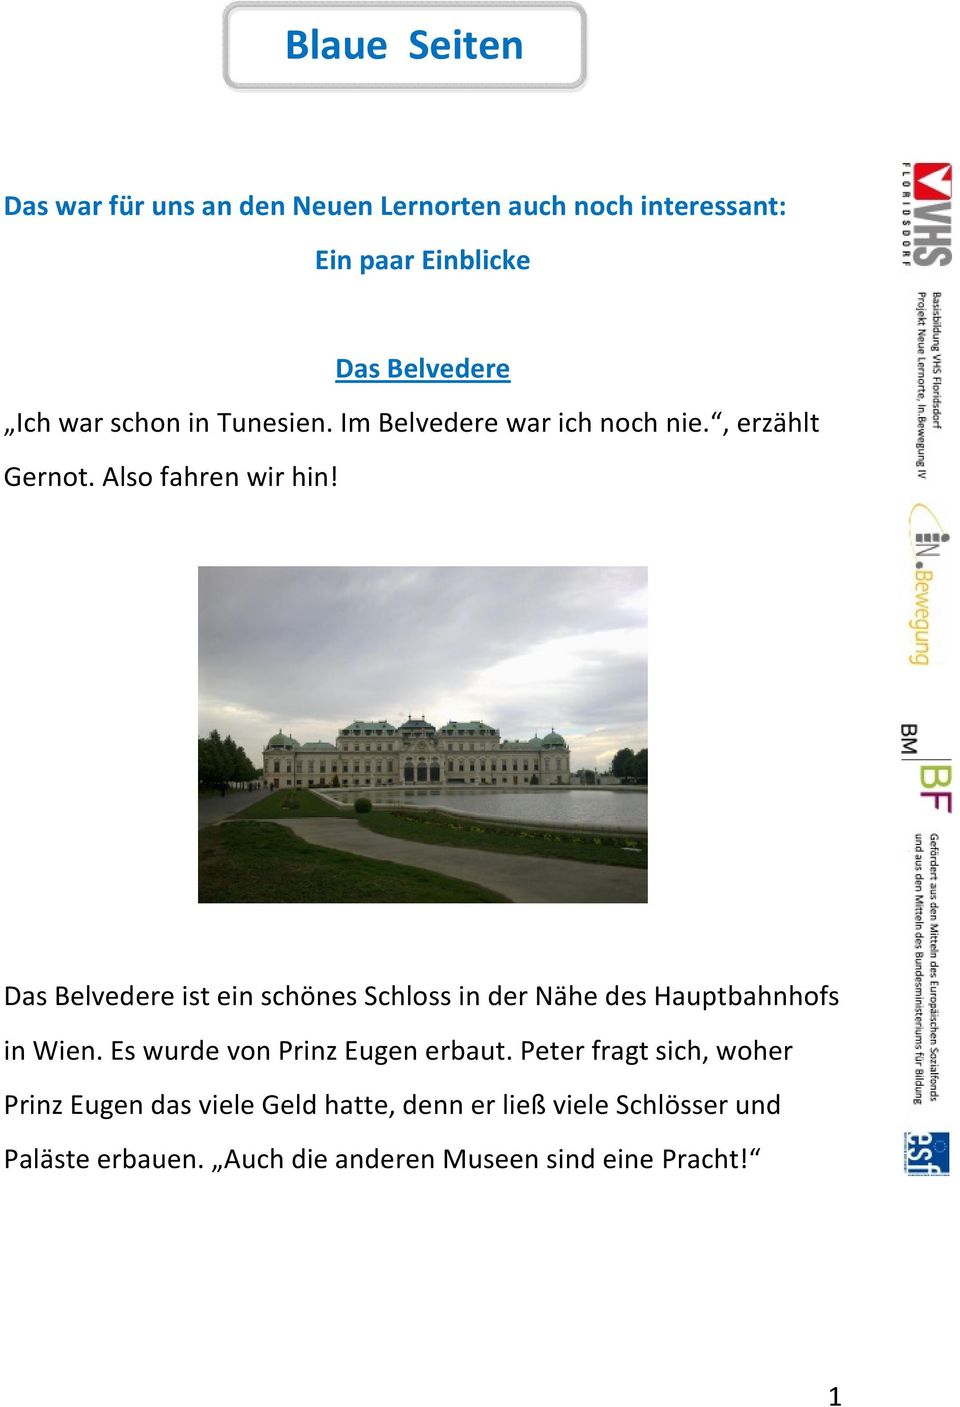 Das Belvedere ist ein schönes Schloss in der Nähe des Hauptbahnhofs in Wien. Es wurde von Prinz Eugen erbaut.